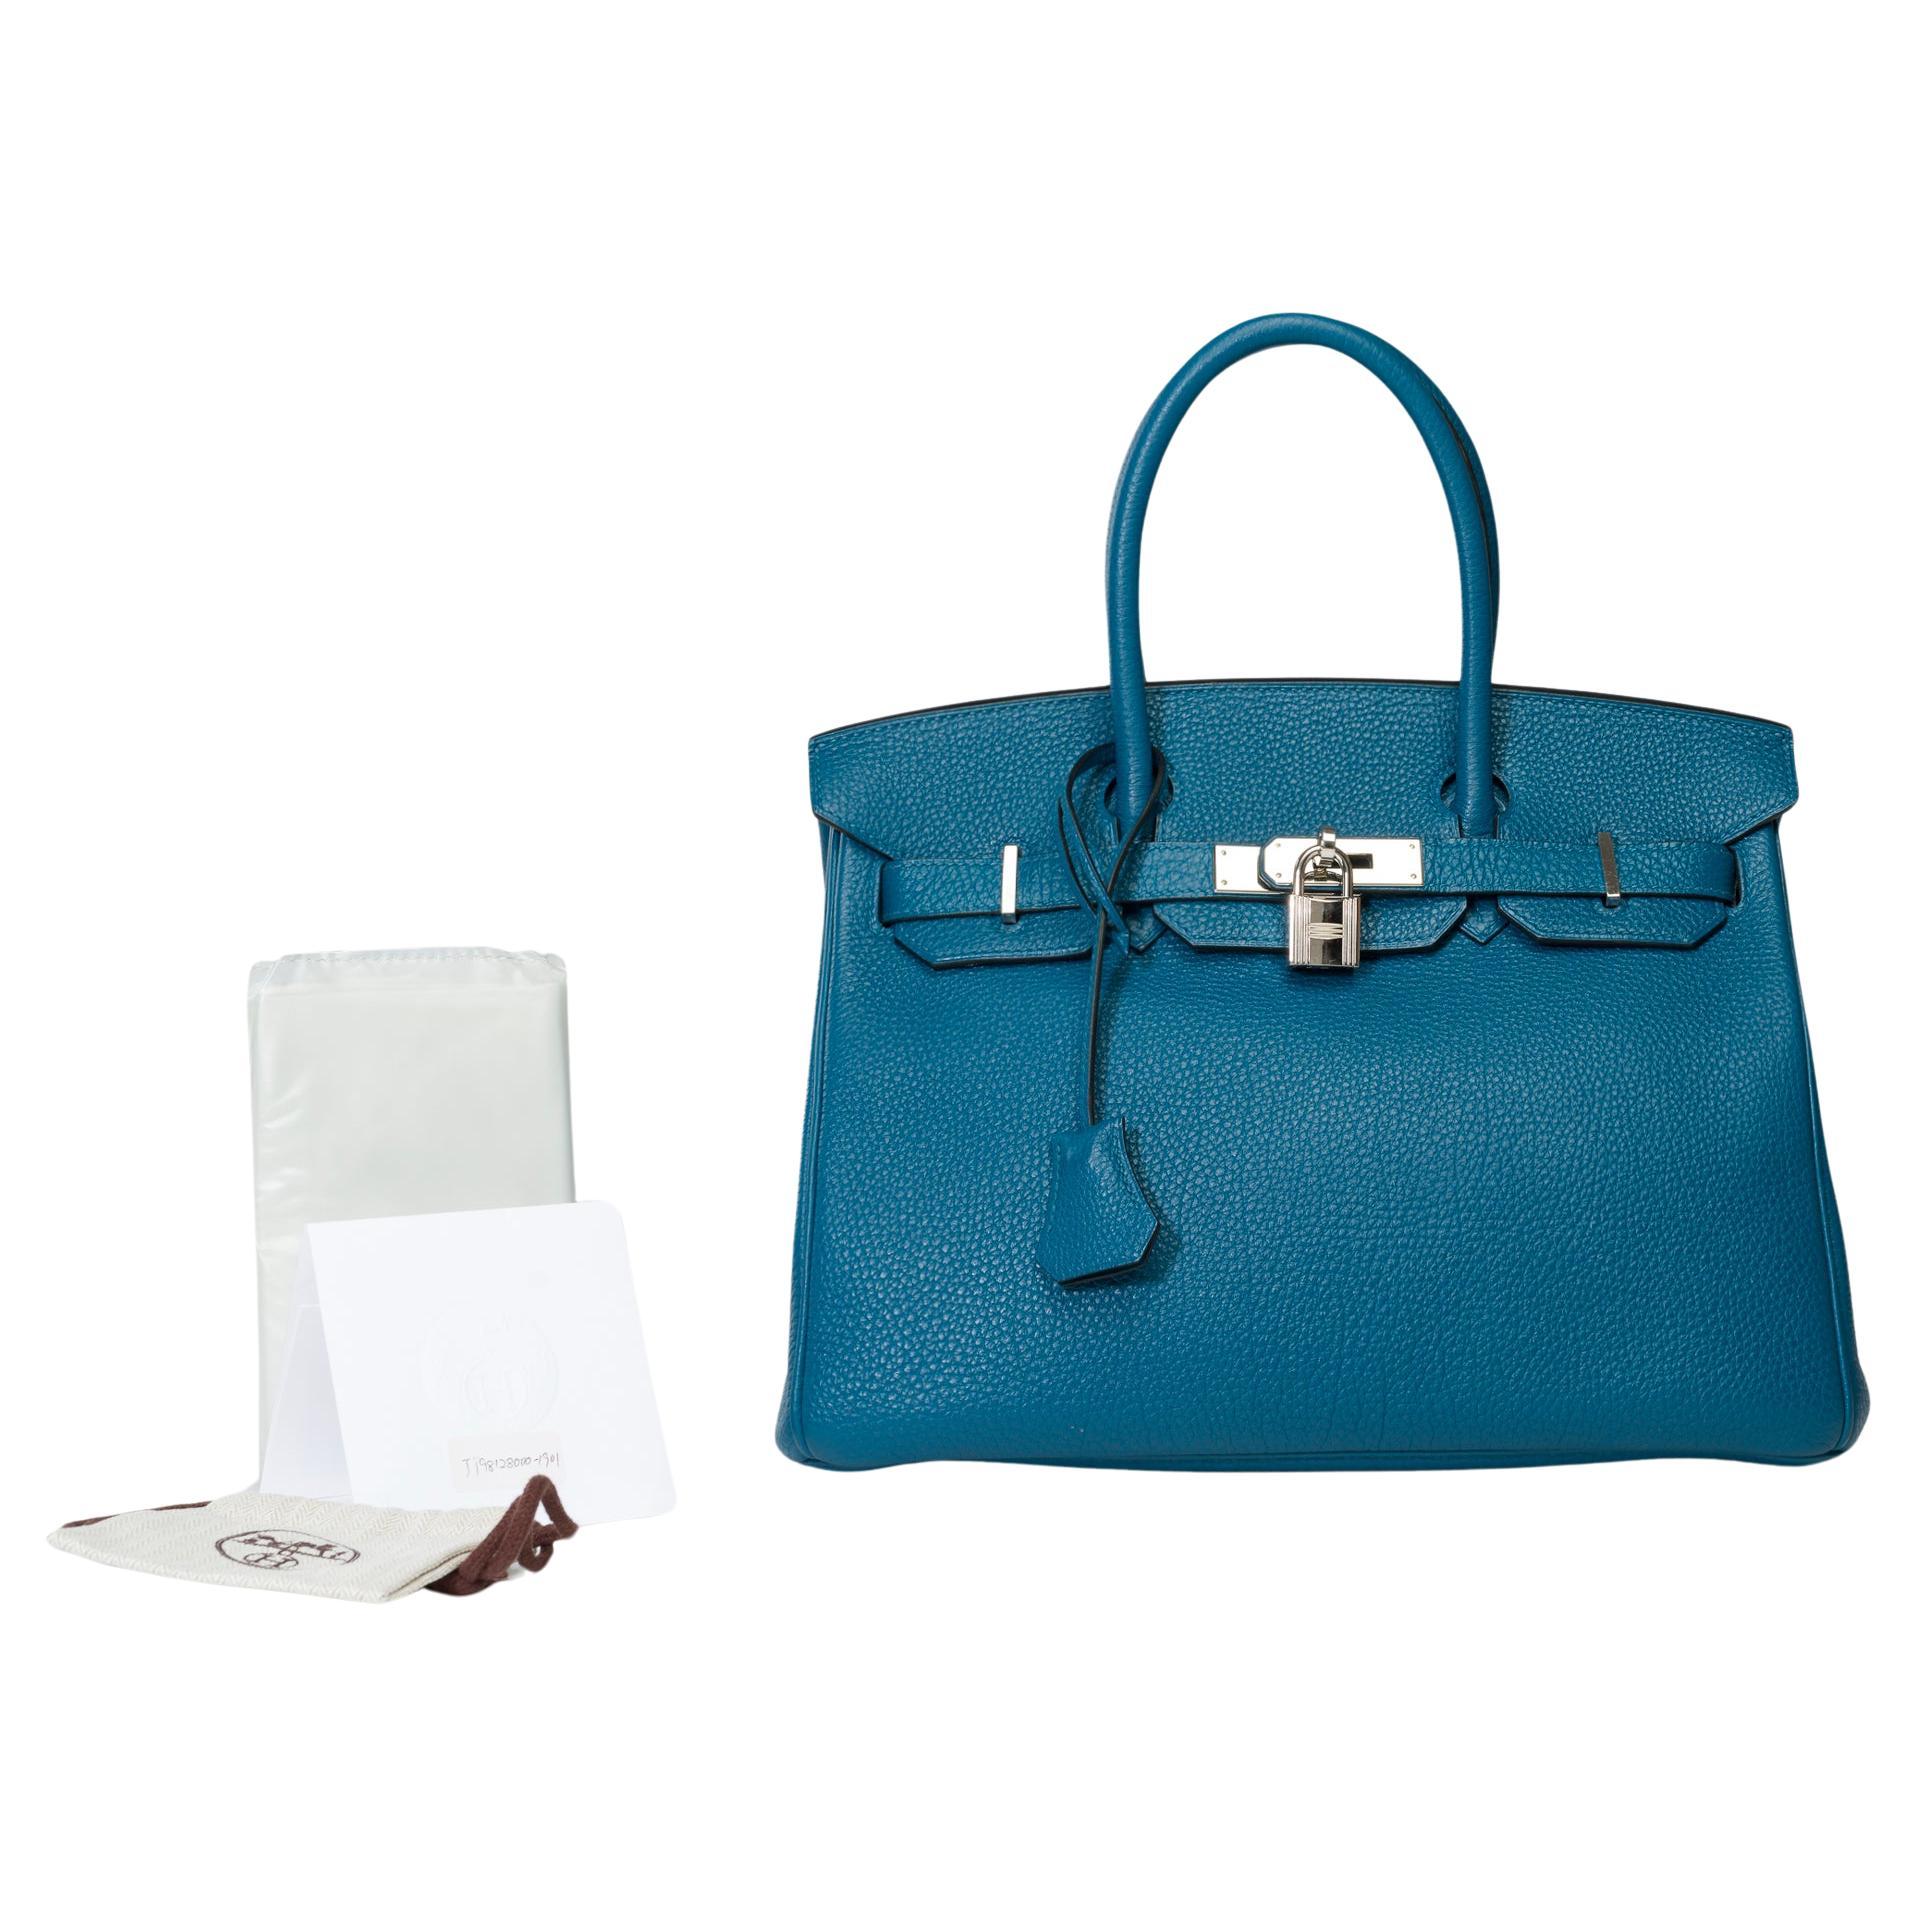 Stunning Hermes Birkin 30 handbag in Blue Togo leather, SHW For Sale